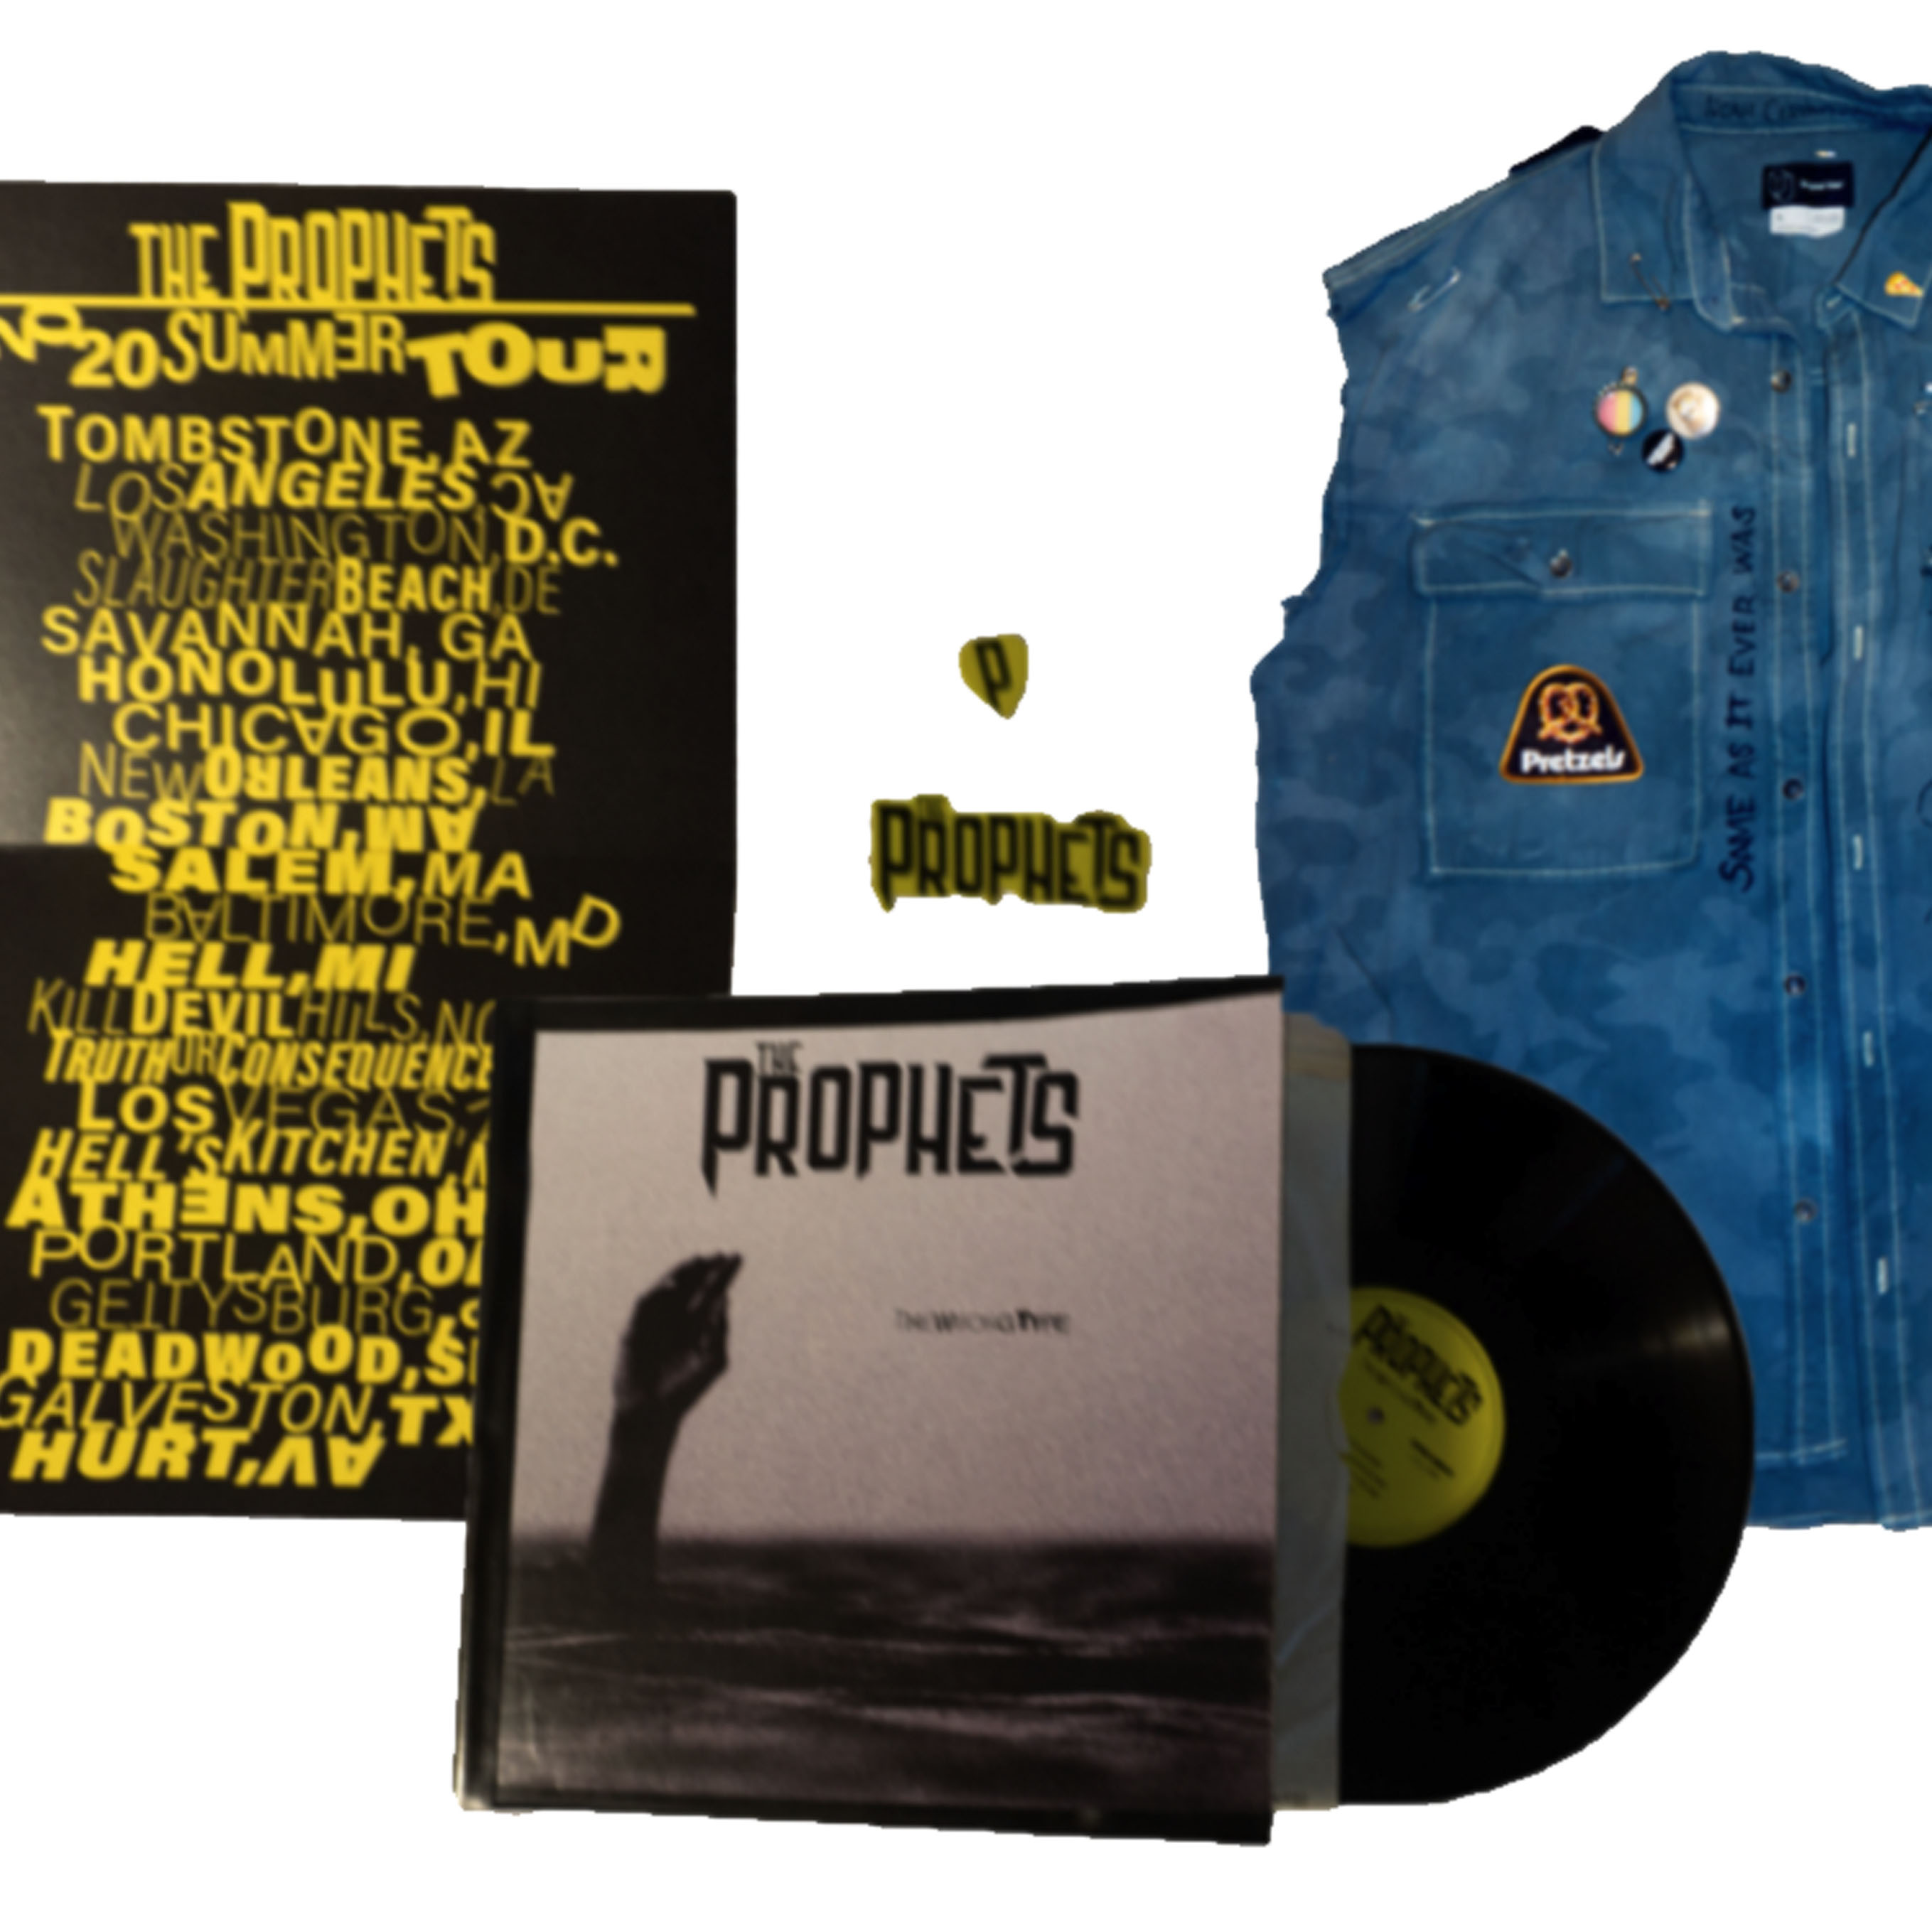 The Prophets Design Campaign: Vinyl Record, Jacket, Tour Poster, Sticker, Guitar Pick and Battle Vest by Noah Cervantes